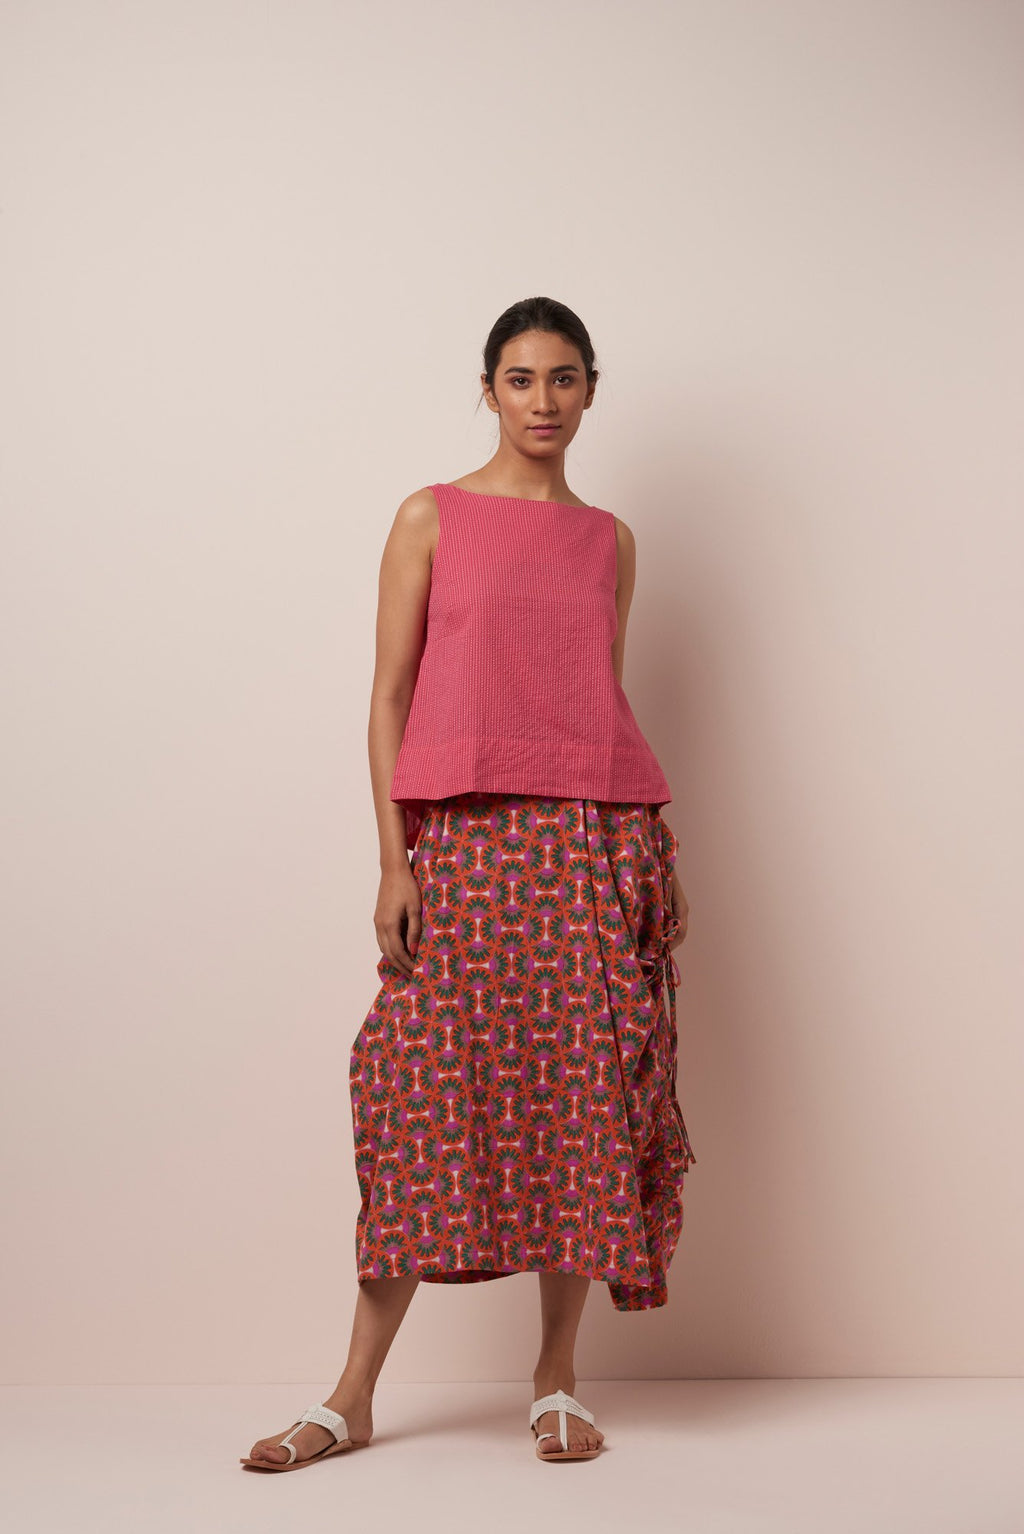 Asha World Designs Freija Skirt in Orange-Pink